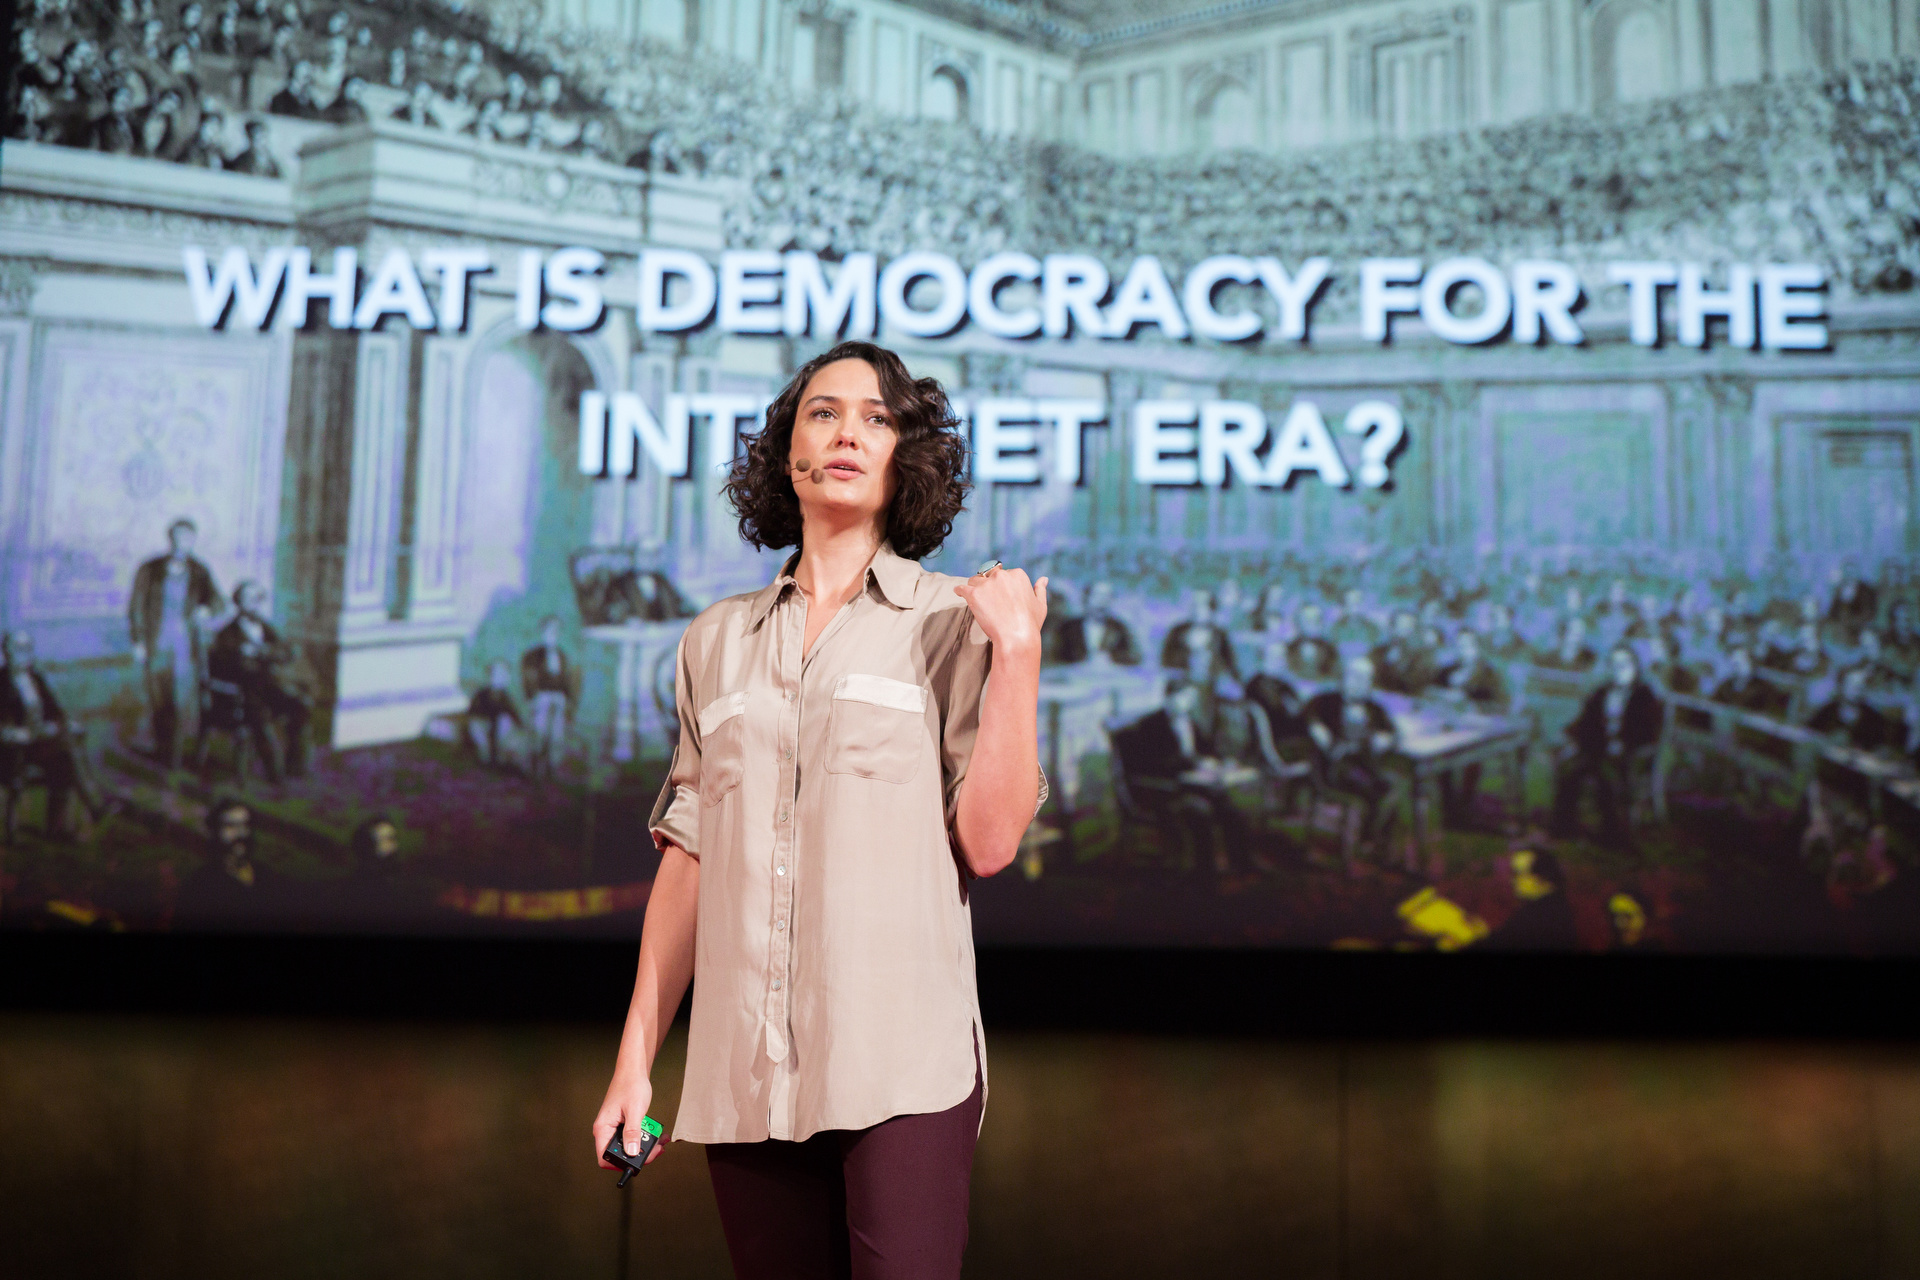 Pia Mancini speaking at TEDGlobal 2014.